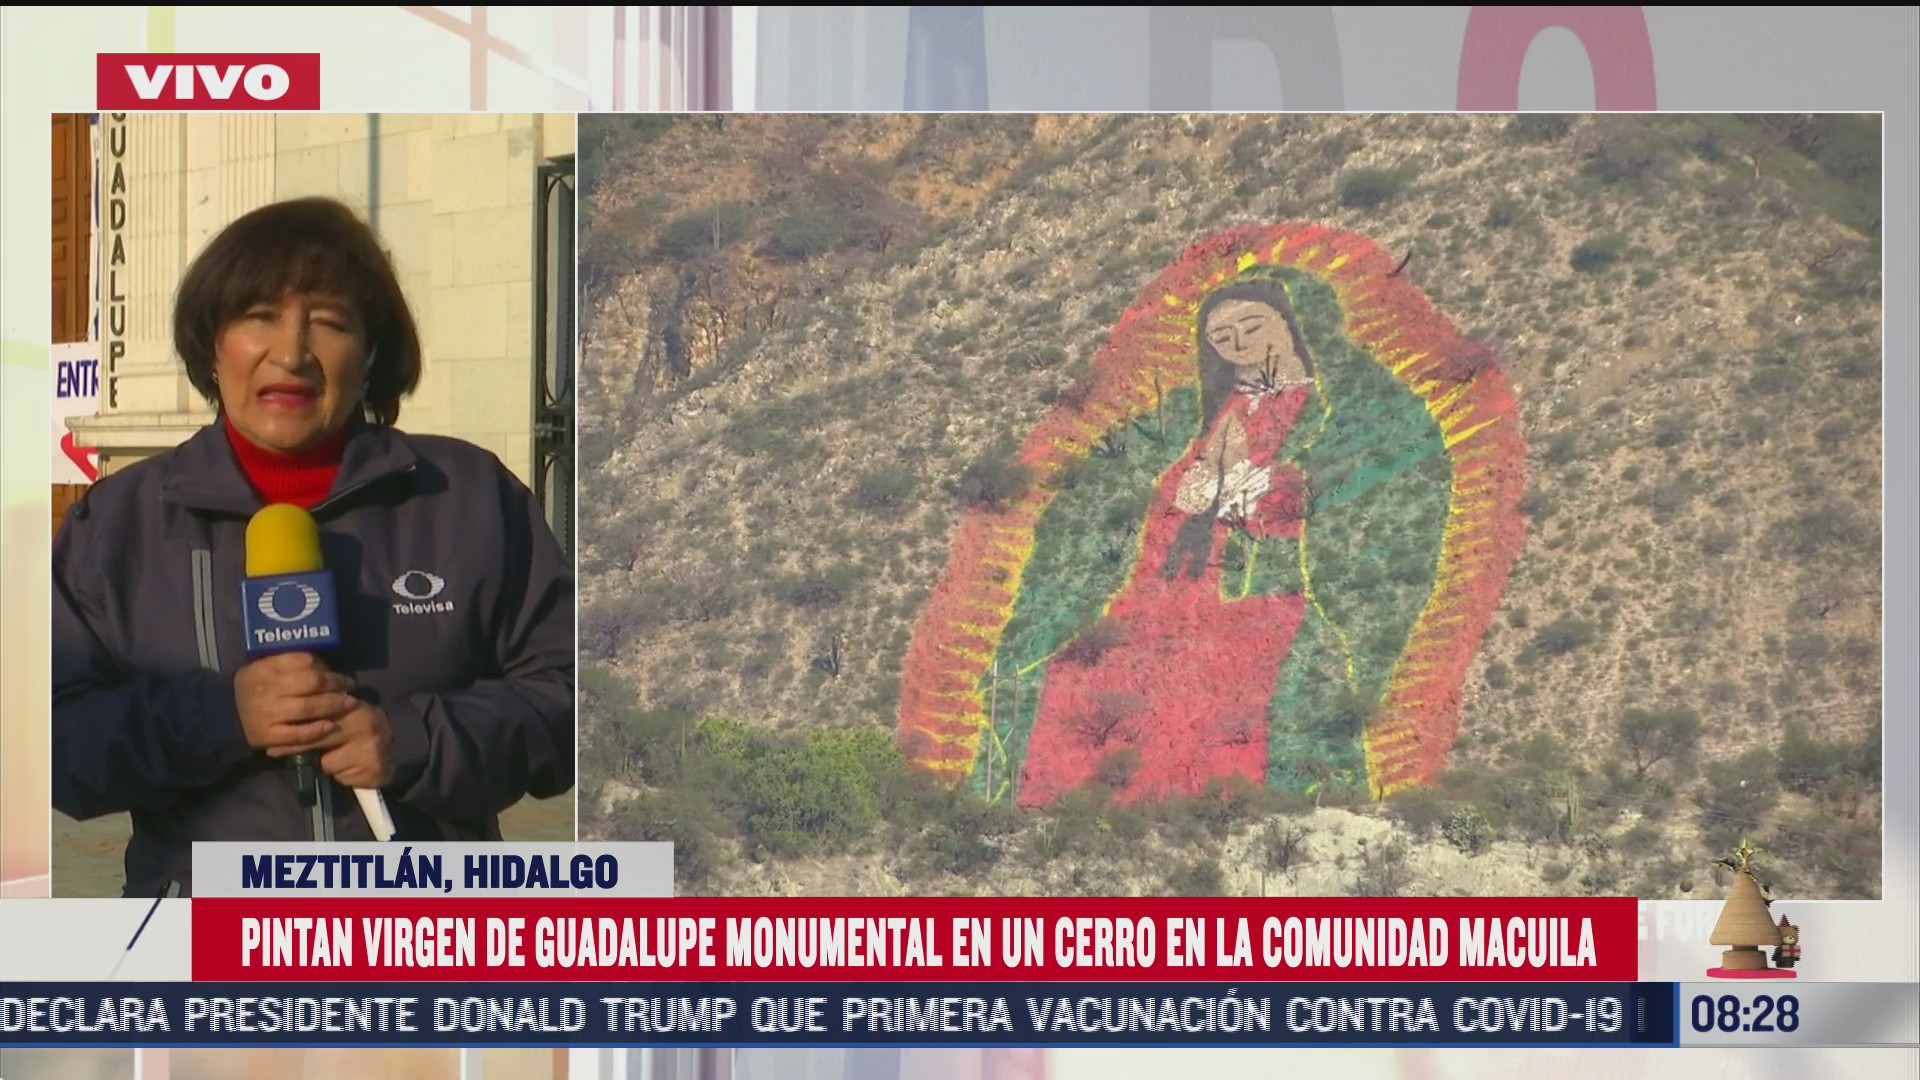 pintan monumental virgen de guadalupe en cerro de la comunidad macuila hidalgo